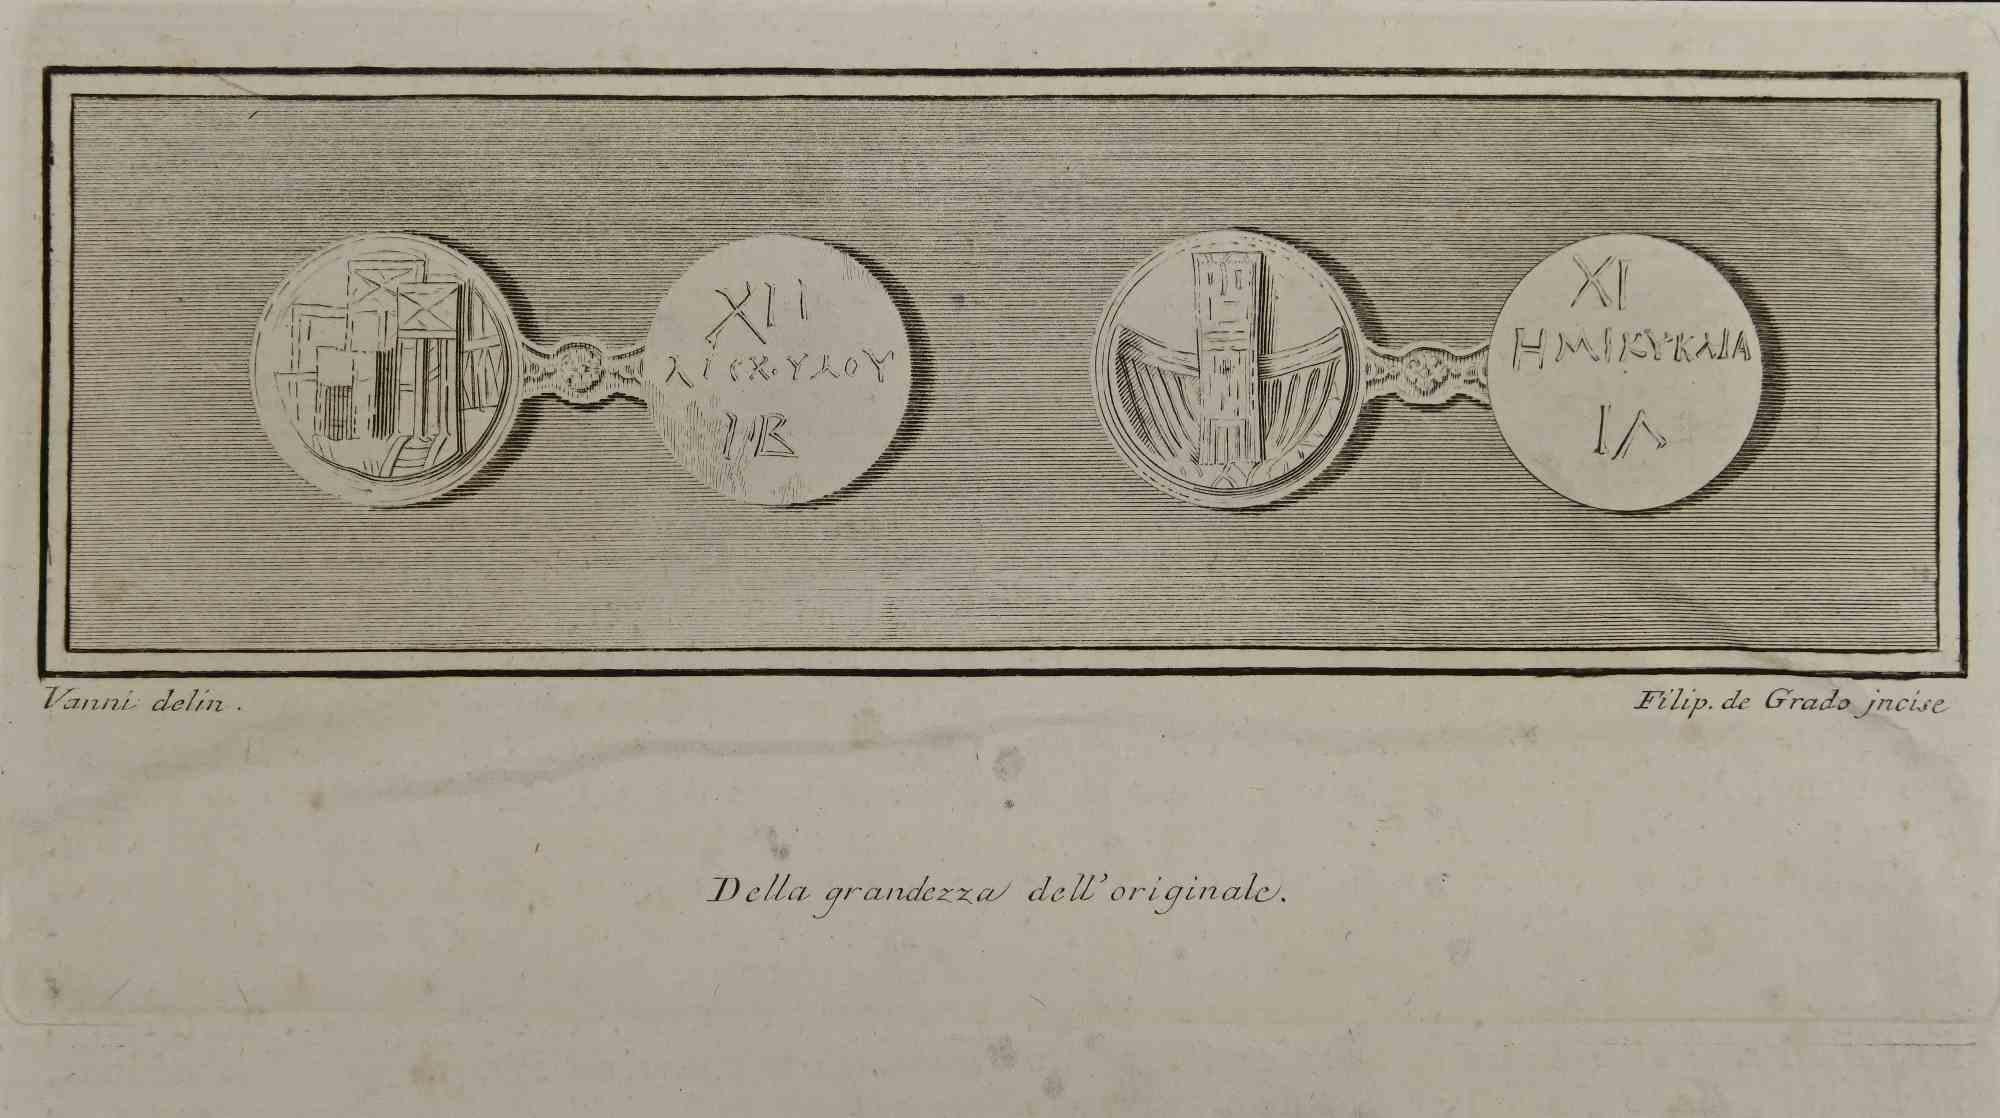 Anciennes monnaies grecques de la série "Antiquités d'Herculanum" est une gravure sur papier réalisée par Filippo De Grado au 18ème siècle.

Bonnes conditions.

Signé en bas.

La gravure appartient à la suite d'estampes "Antiquités d'Herculanum